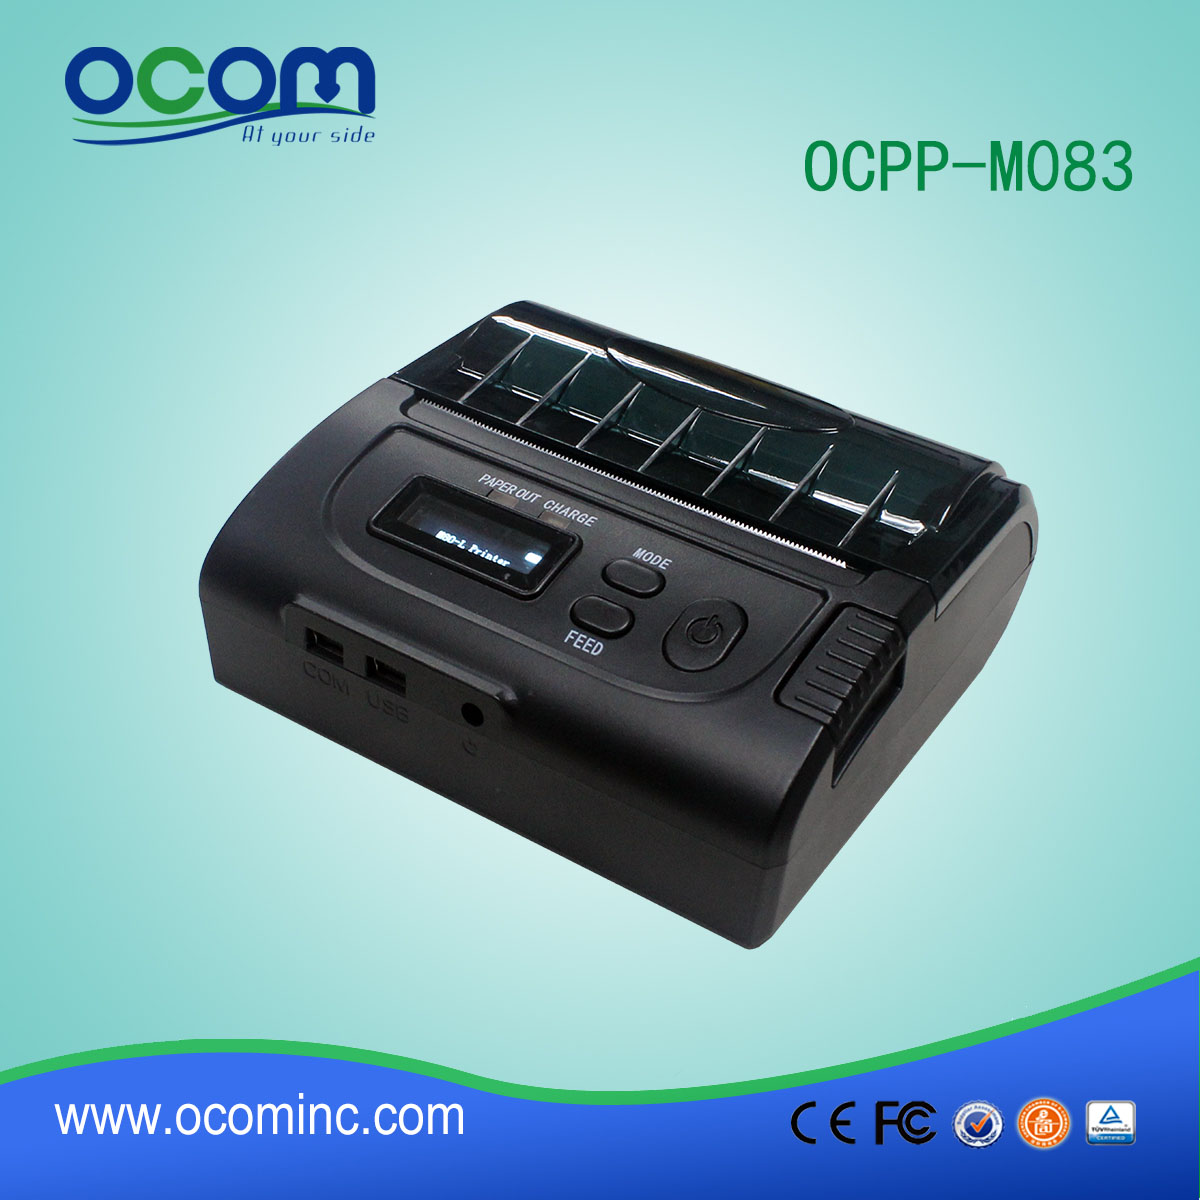 M083-OCPP fábrica pos recibo térmica impressora móvel impressora